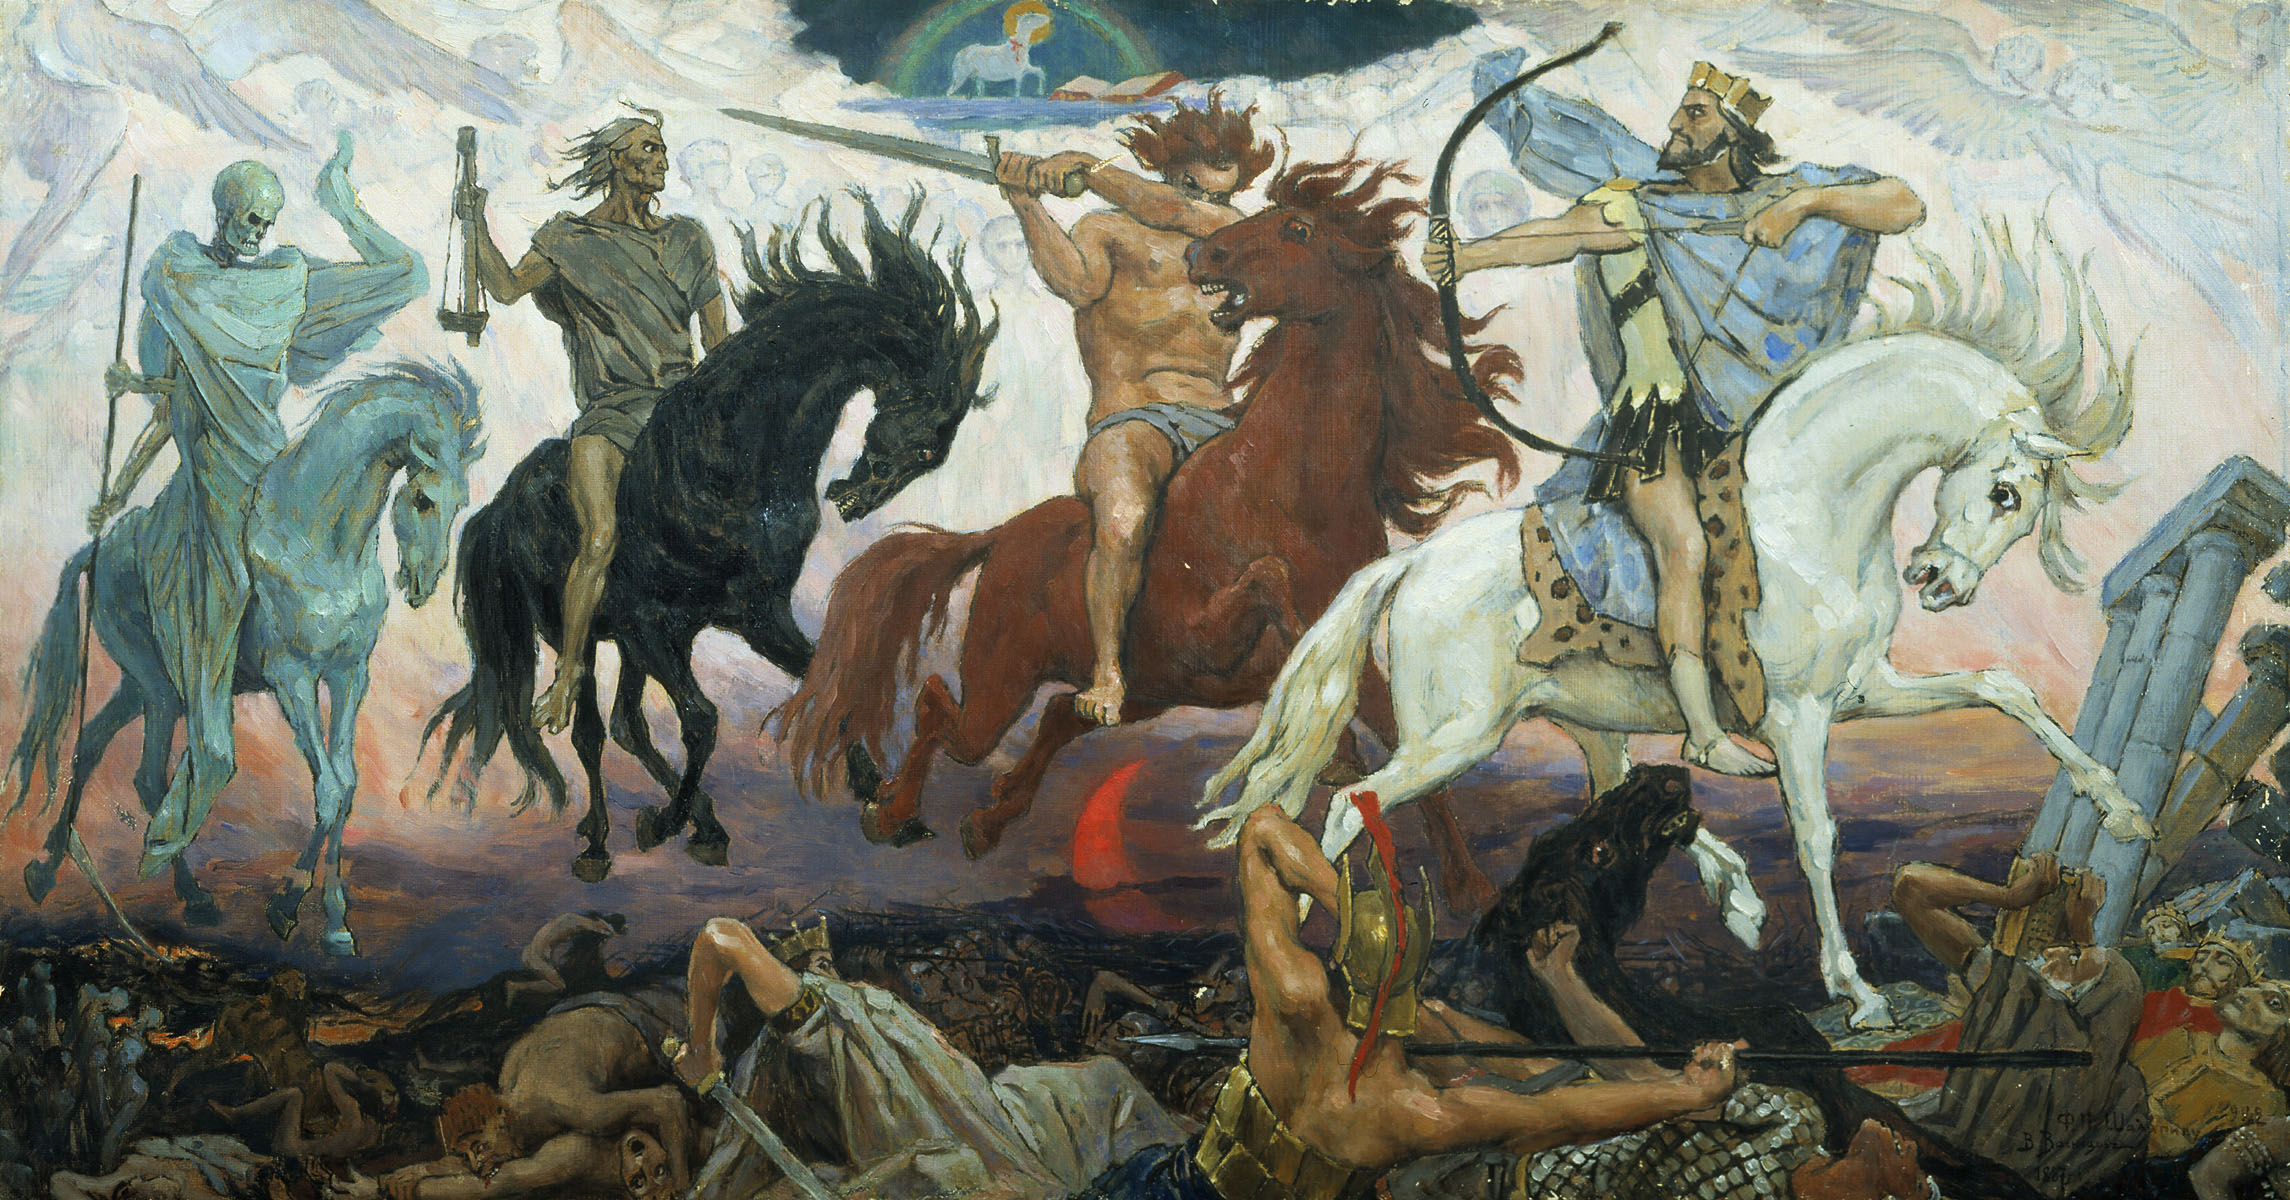 Los cuatro Jinetes del Apocalipsis que según la Biblia aportarían grandes males a la humanidad. De izquierda a derecha: la muerte, el hambre, la guerra y la enfermedad. Pintura de Viktor Vasnetsov (1887).